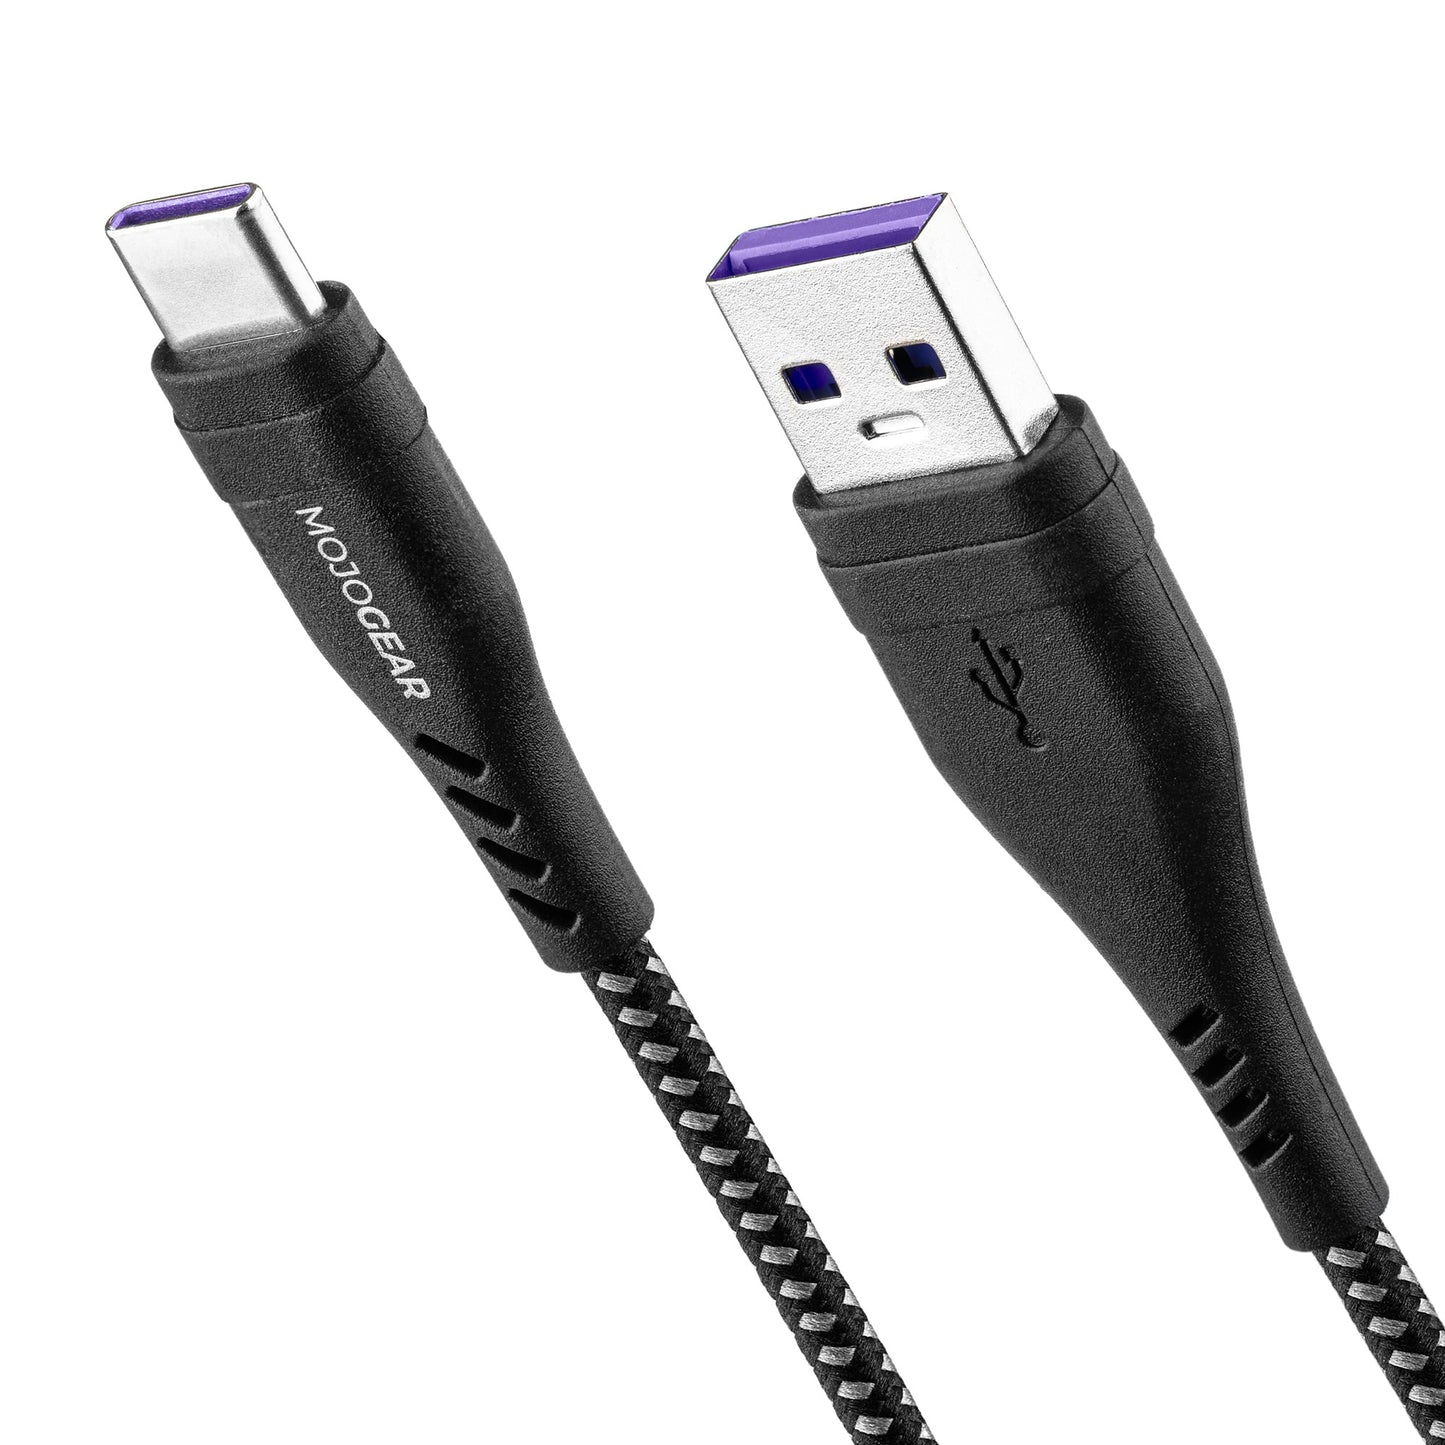 MOJOGEAR USB-C naar USB kabel Extra Sterk